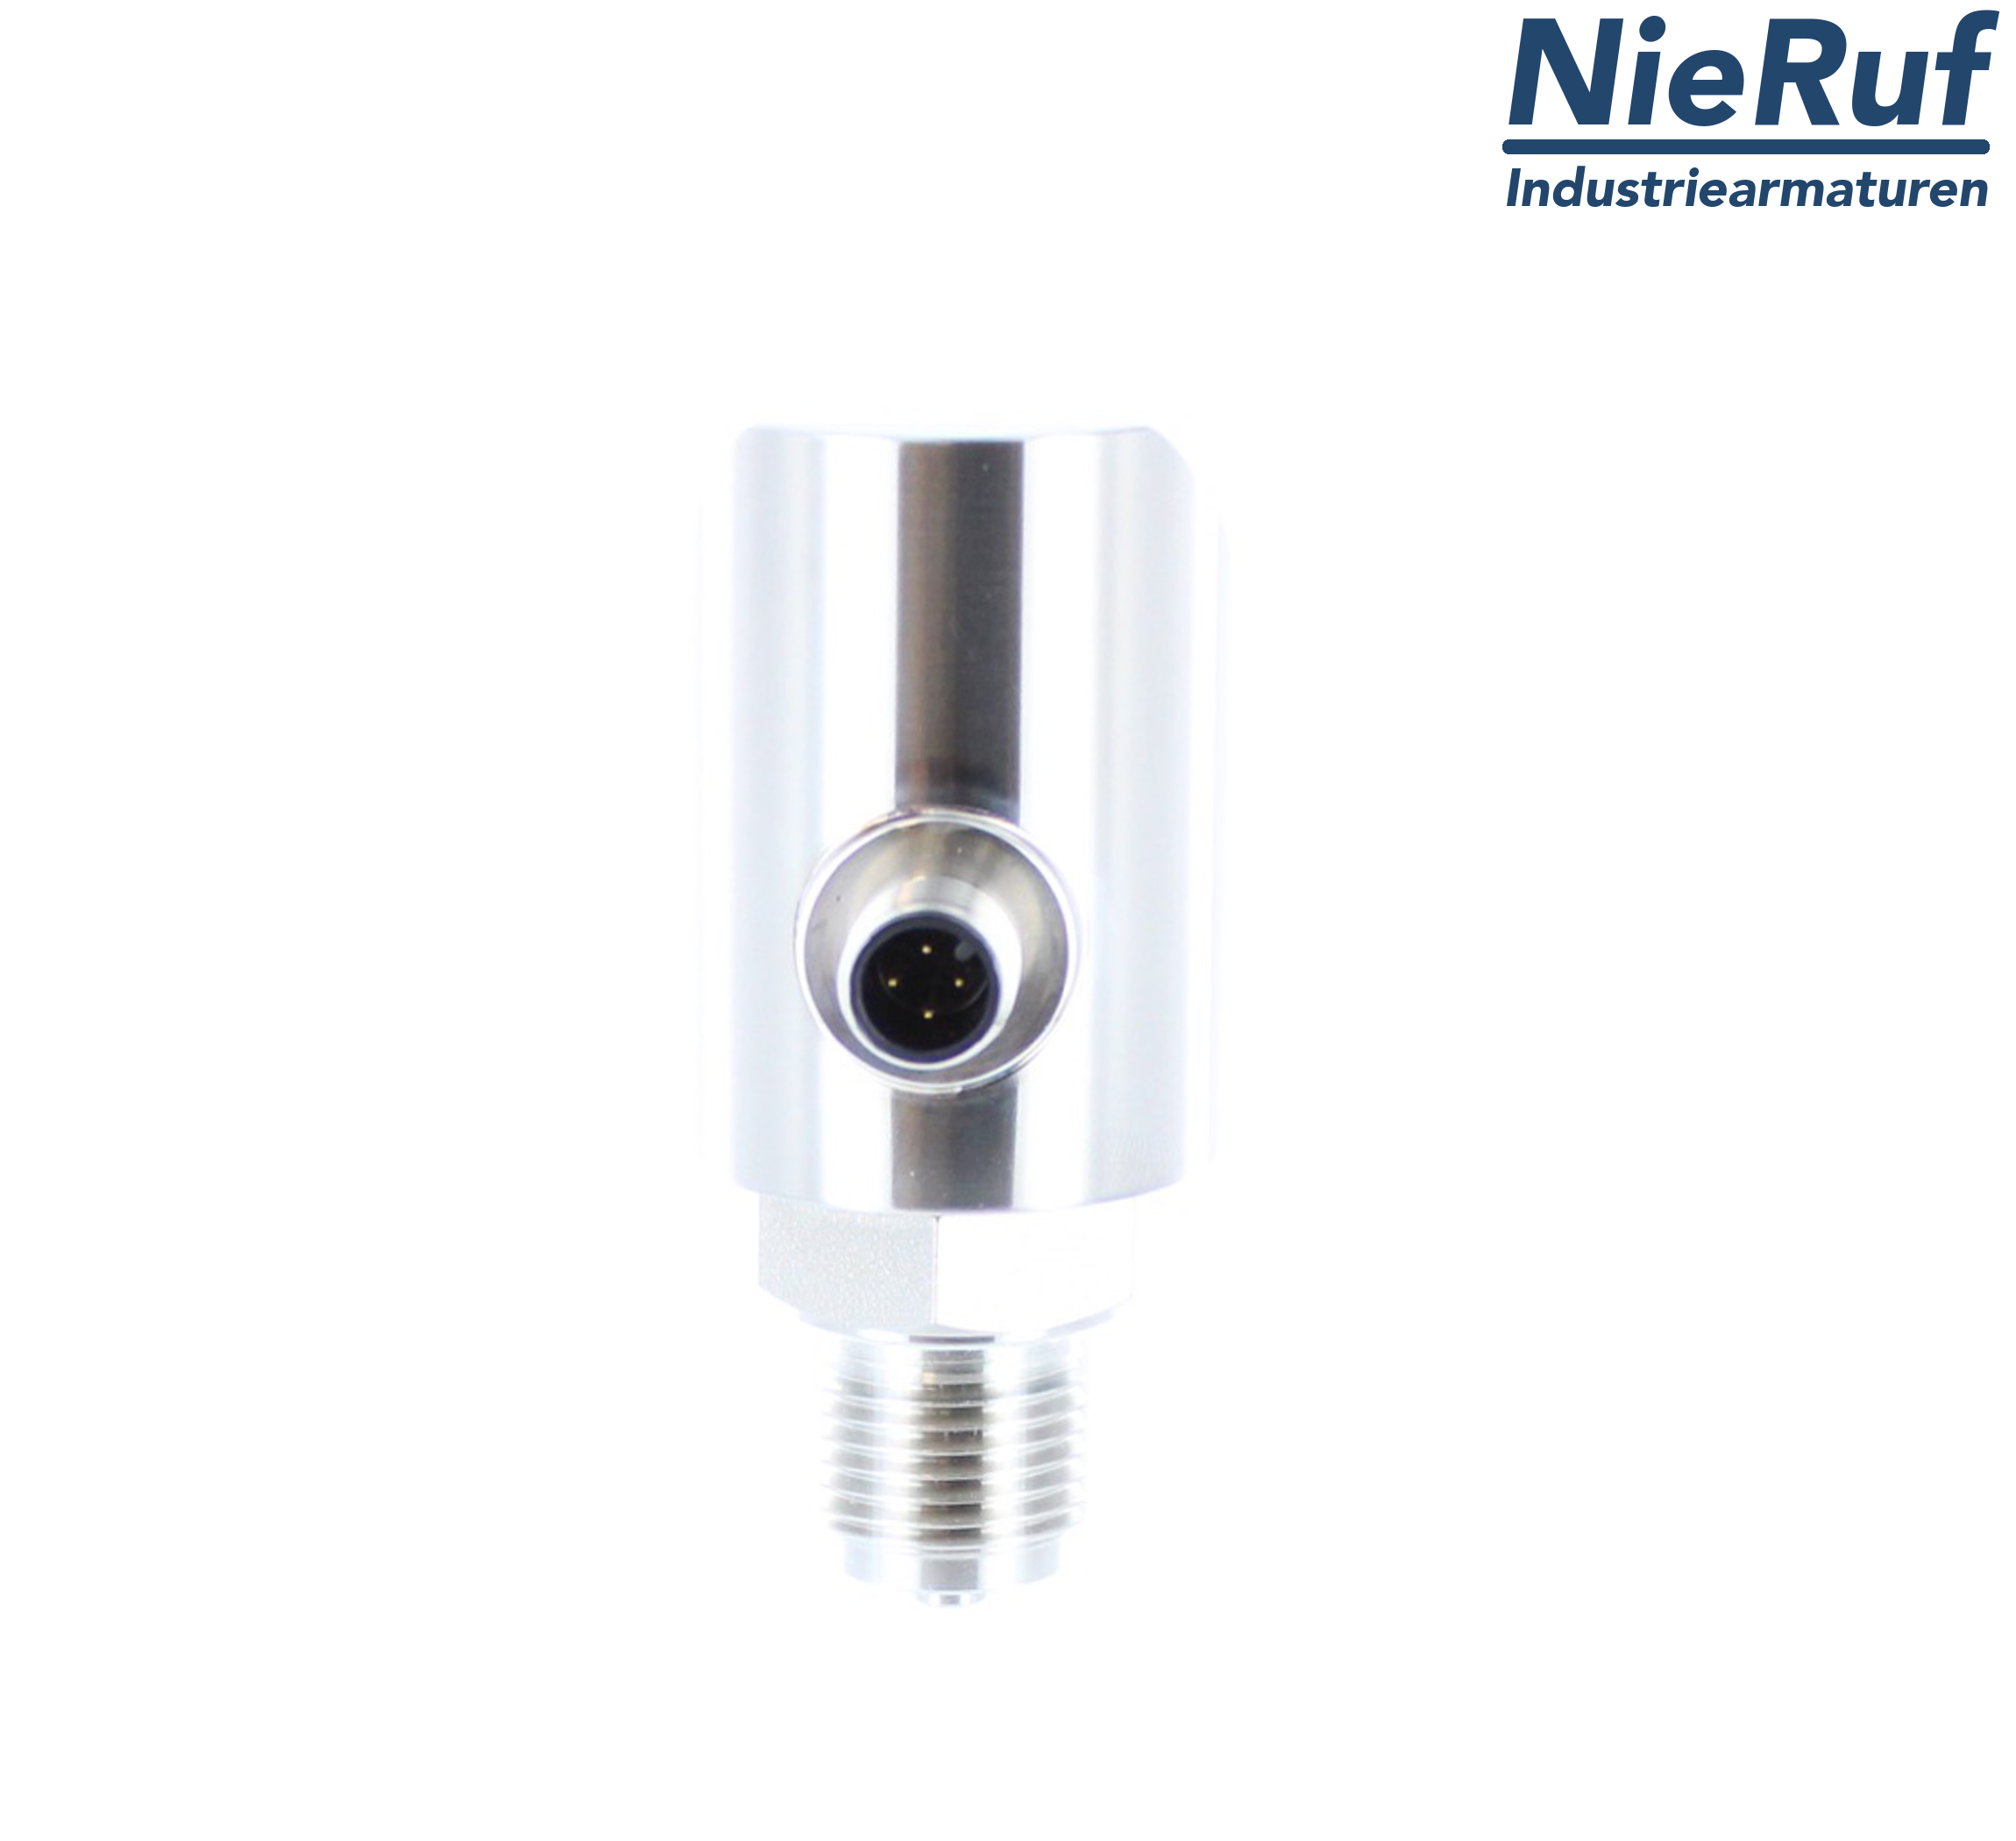 digital pressure sensor G 1/4" B 4-wire: 1xPNP, 1x4 - 20mA, Desina FPM 0,0 - 10,0 bar